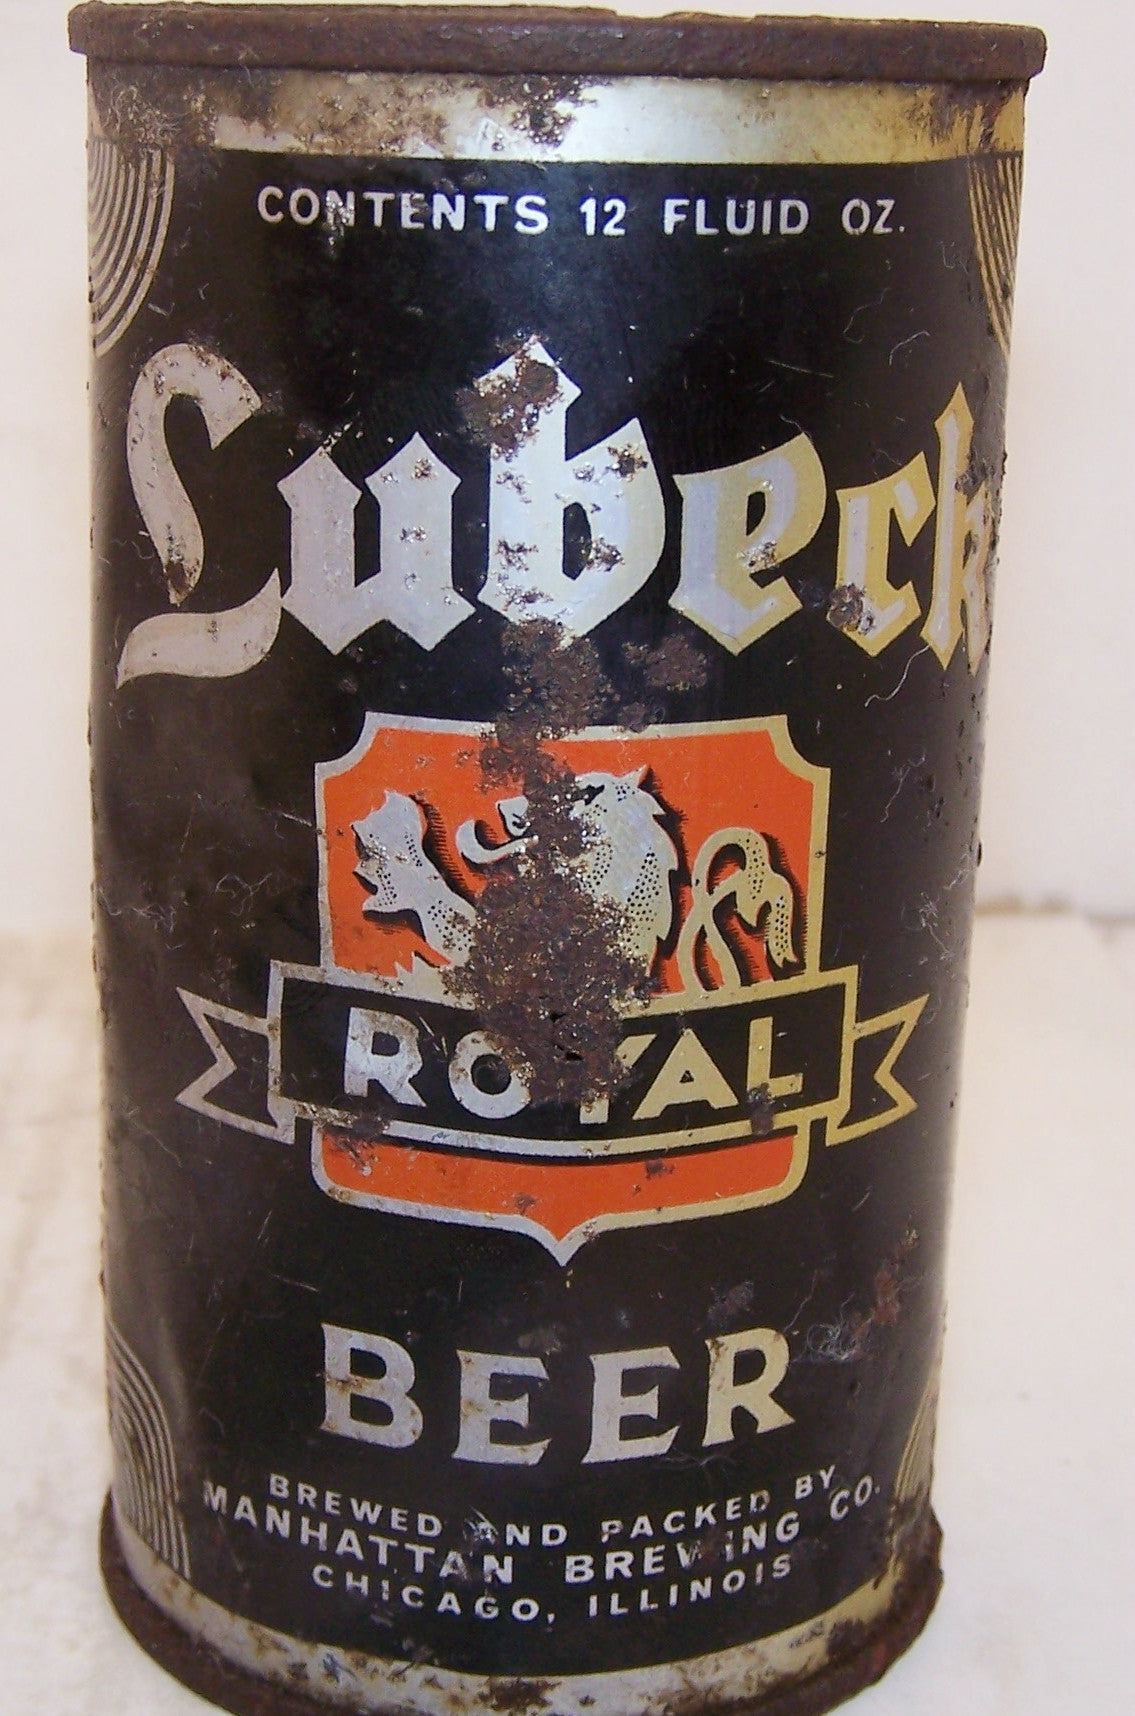 Lubeck Royal Beer, Lilek page # 501 Grade 3 Dumper Sold on 11/16/14